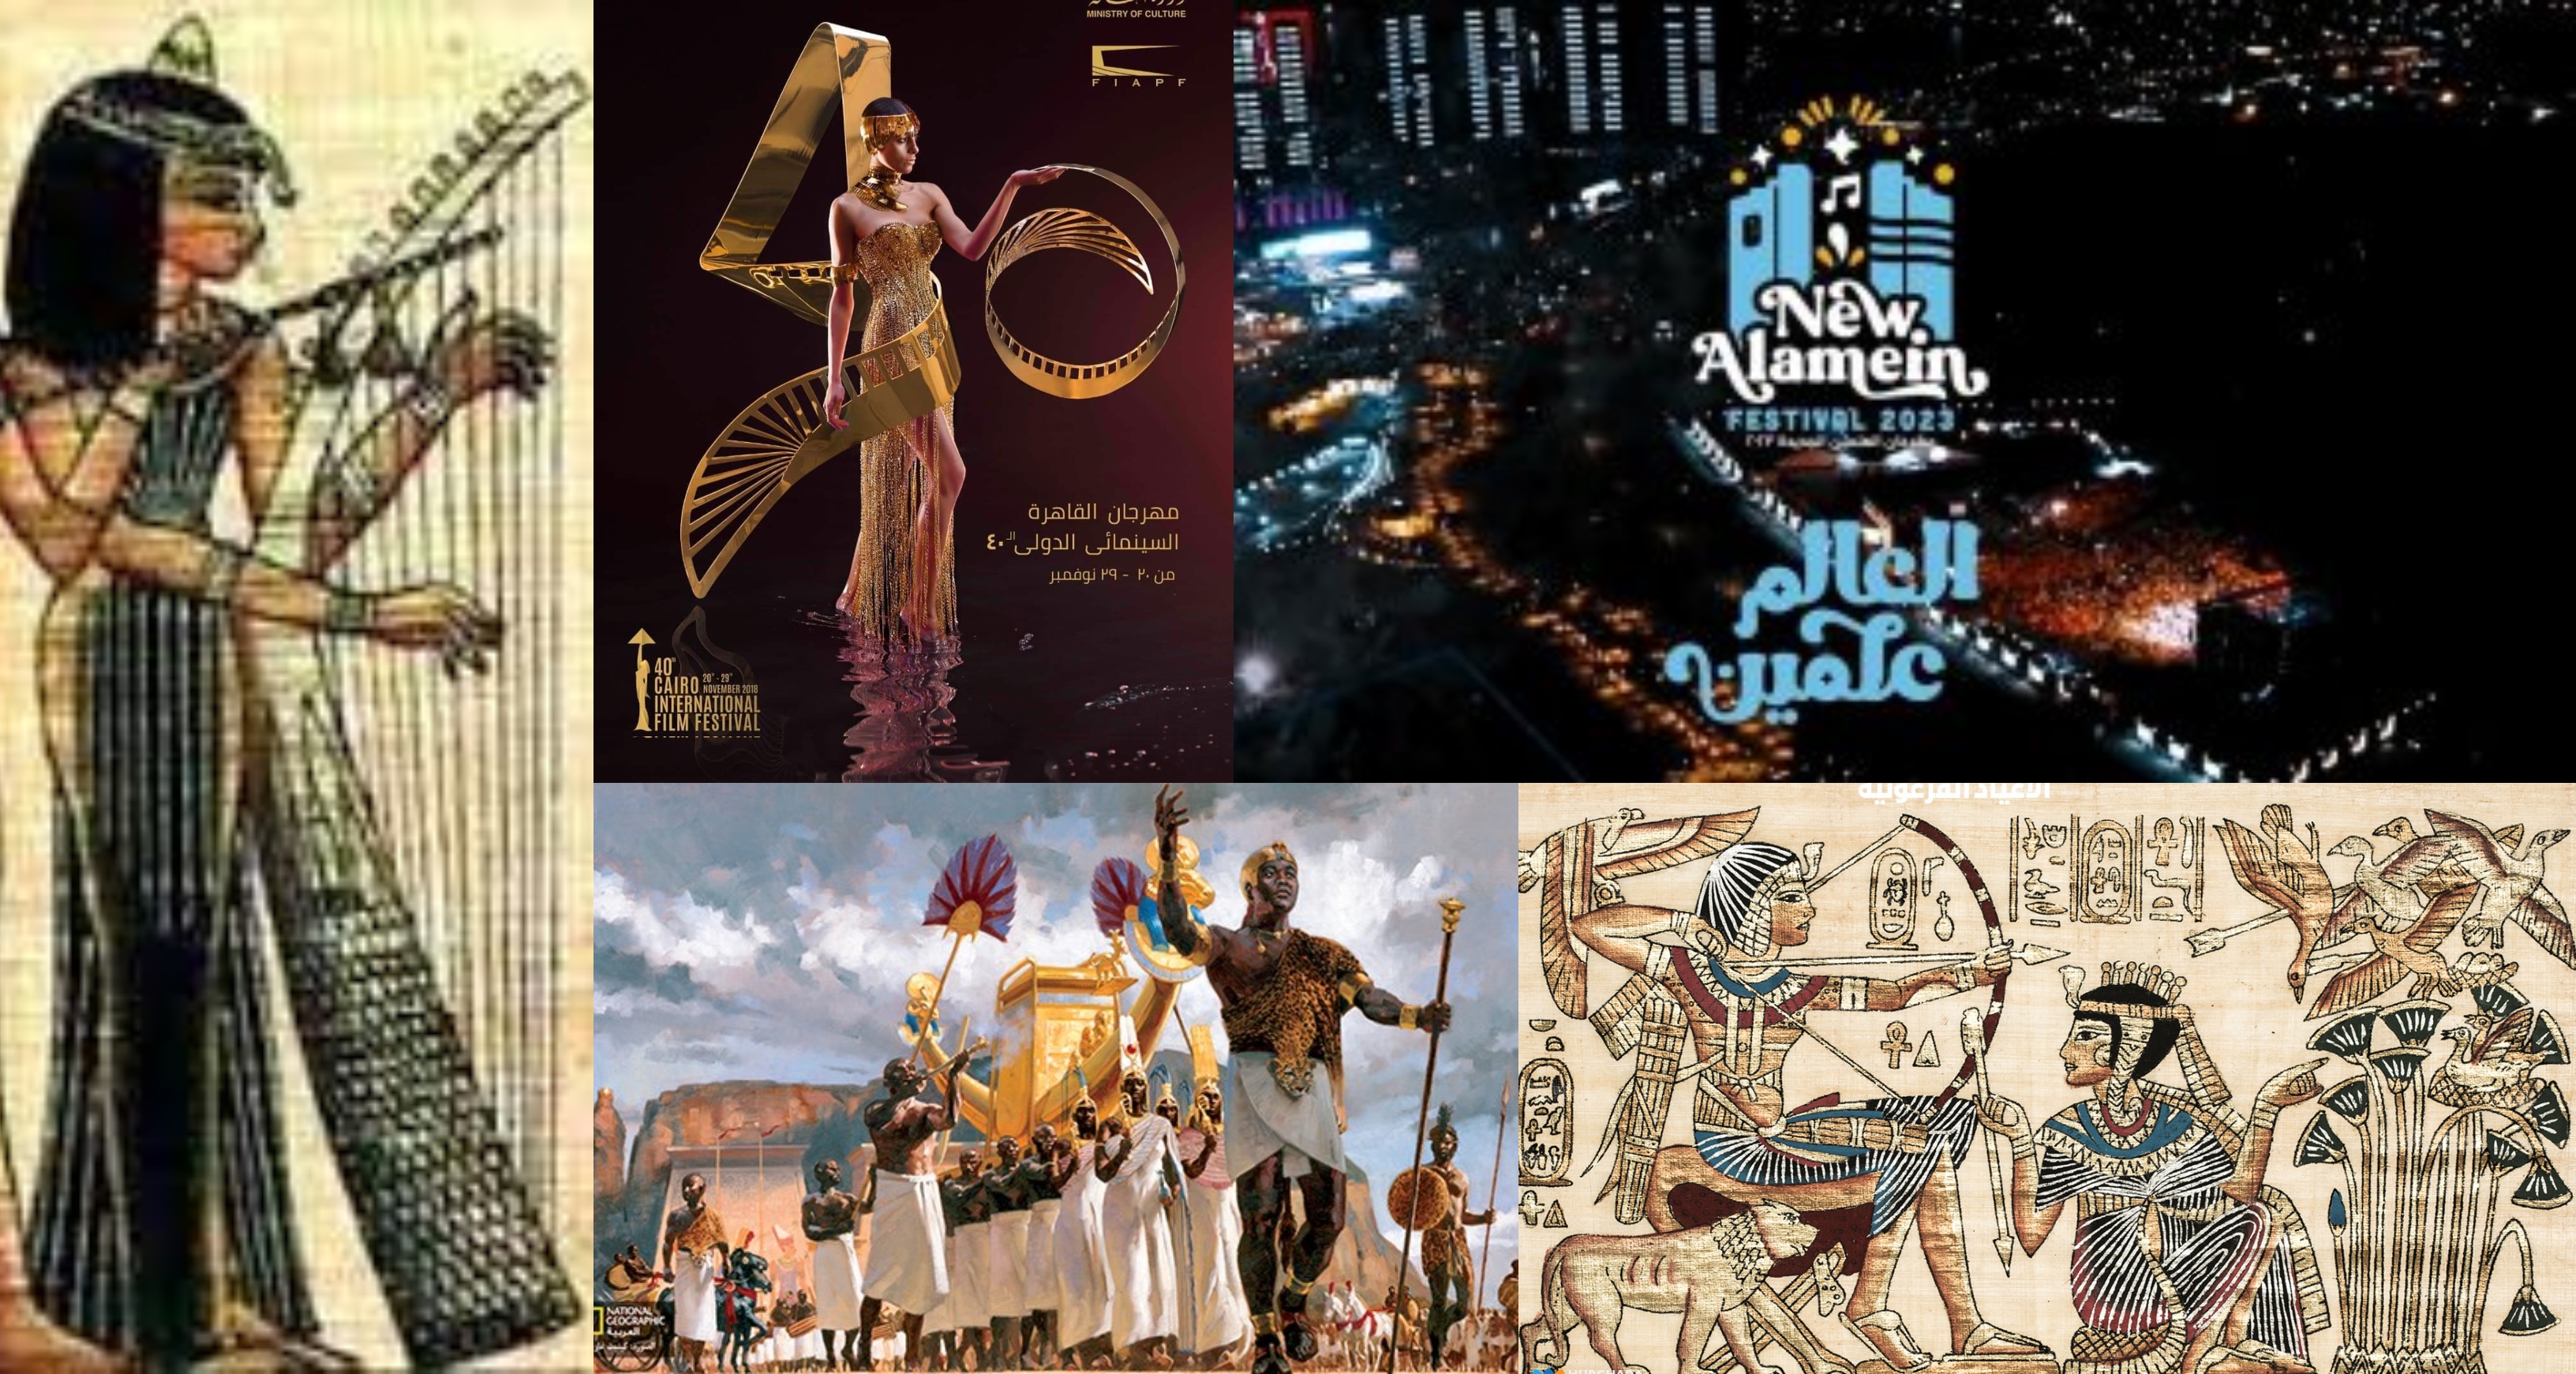 ريادة مصر في المهرجانات بدأت من الحضارة المصرية القديمة واستمرت حتي الآن